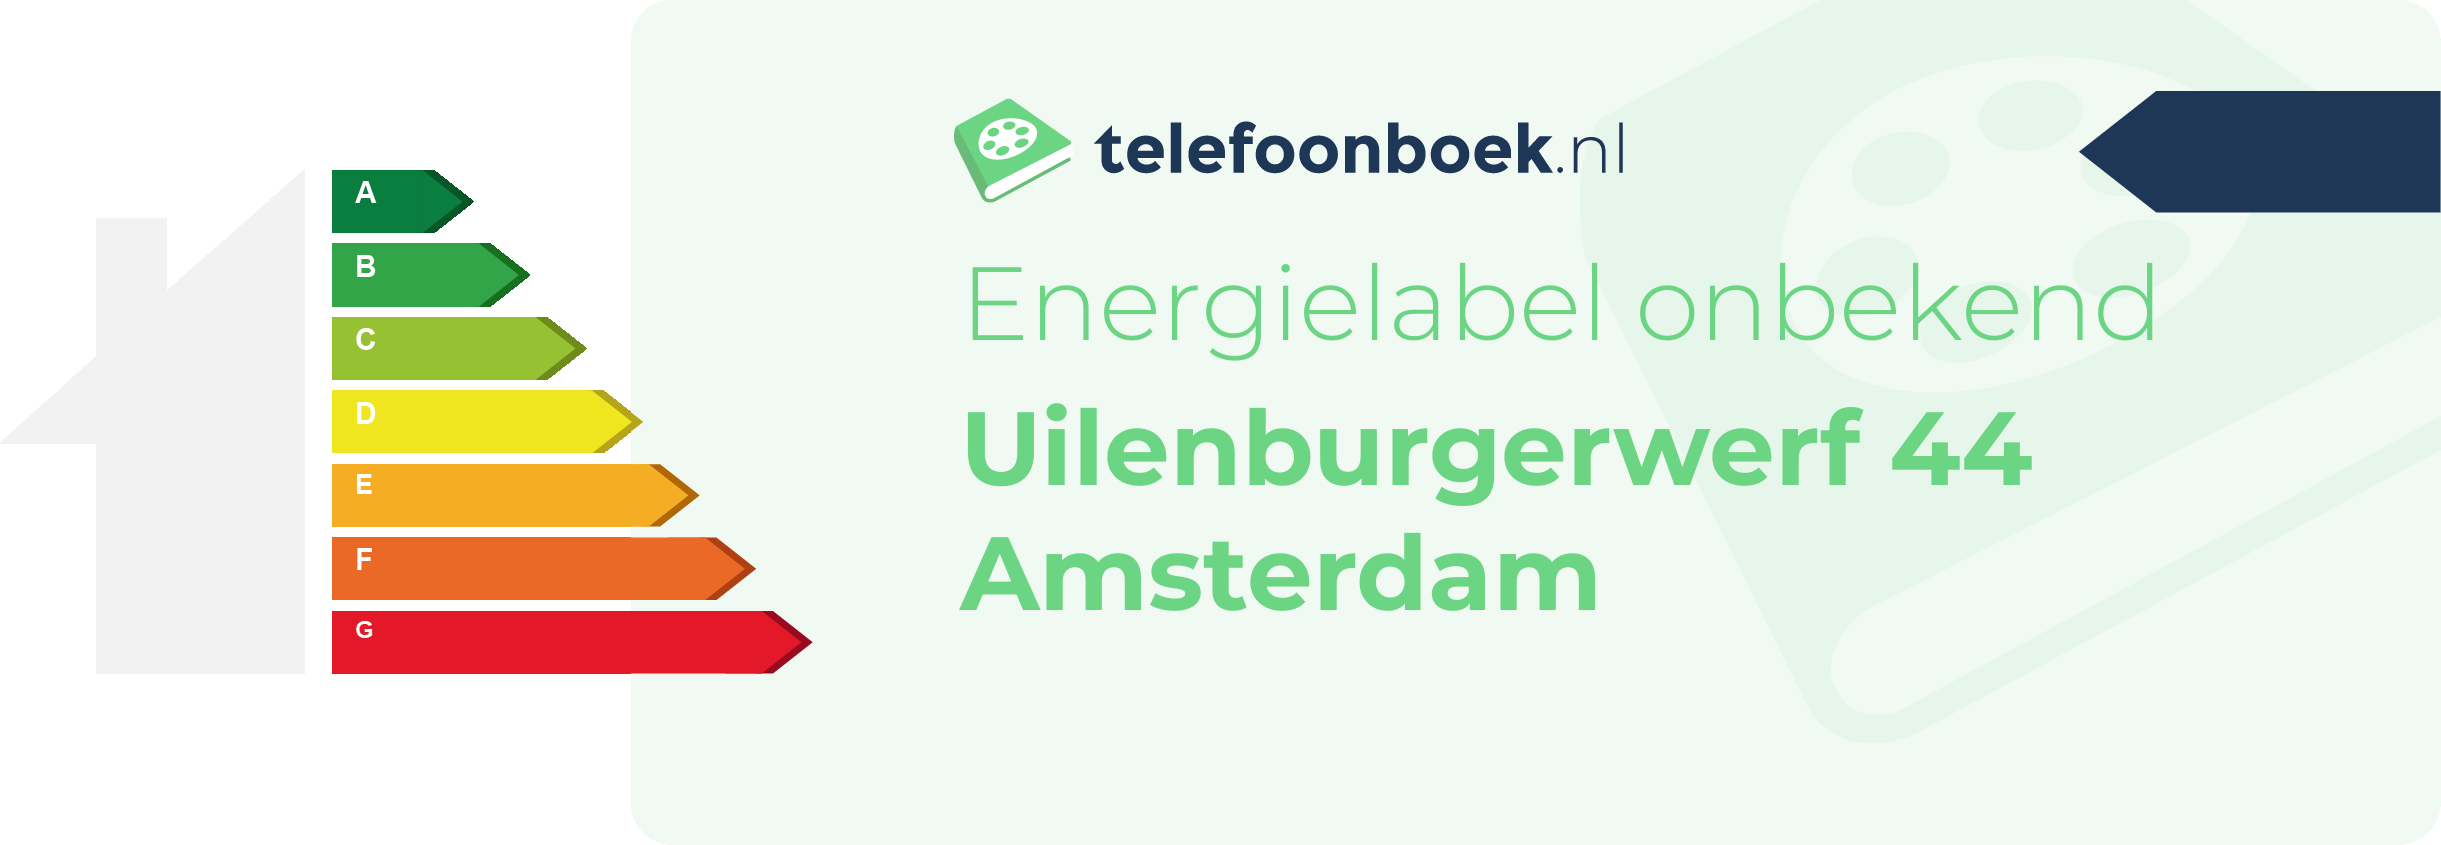 Energielabel Uilenburgerwerf 44 Amsterdam